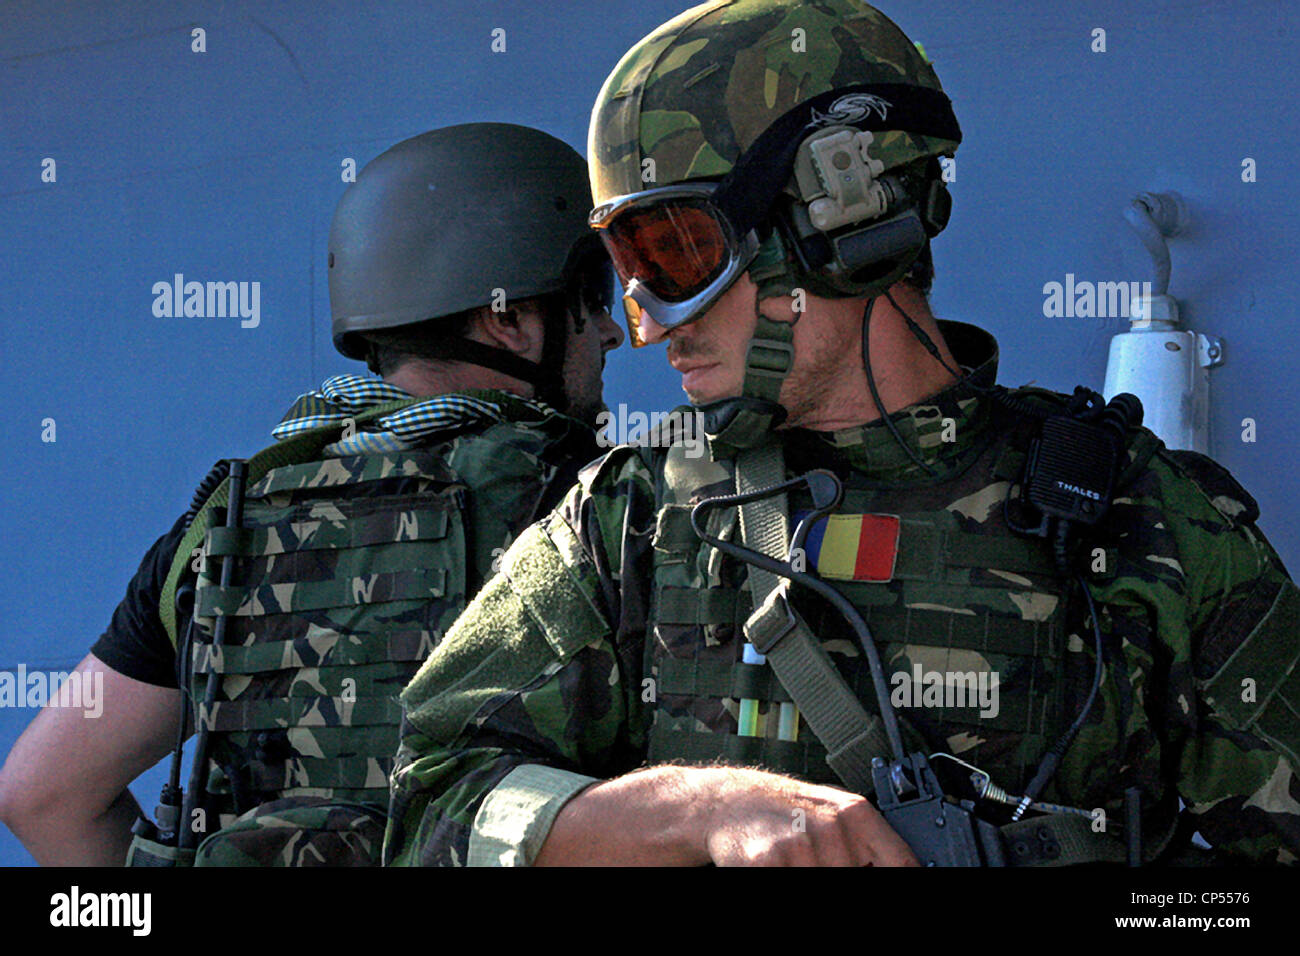 Romanian Special Operations Forces pendant un exercice de formation conjointe avec l'US Army Special Operations, 17 septembre 2011 à Constanta, Roumanie Banque D'Images